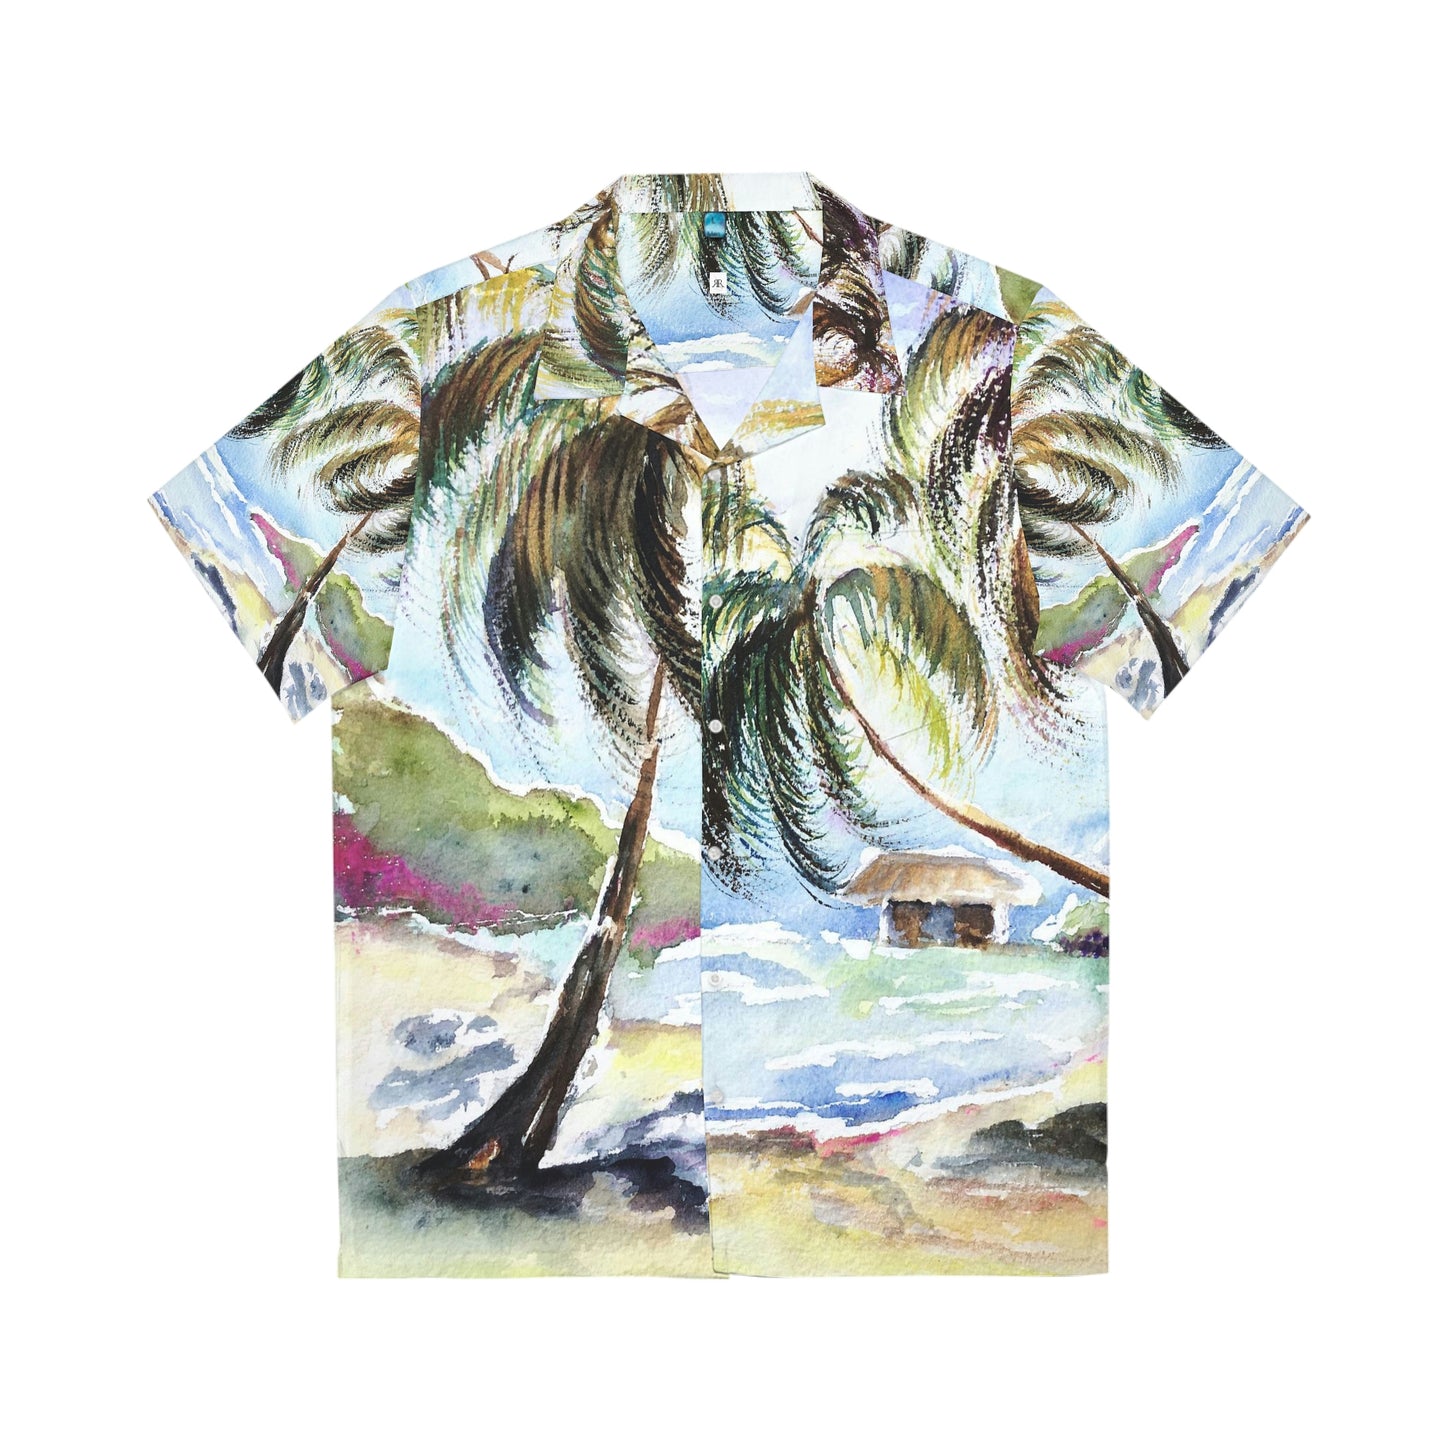 Hawaï attend des palmiers originaux paysage aquarelle hawaïen chemise hawaïenne pour hommes